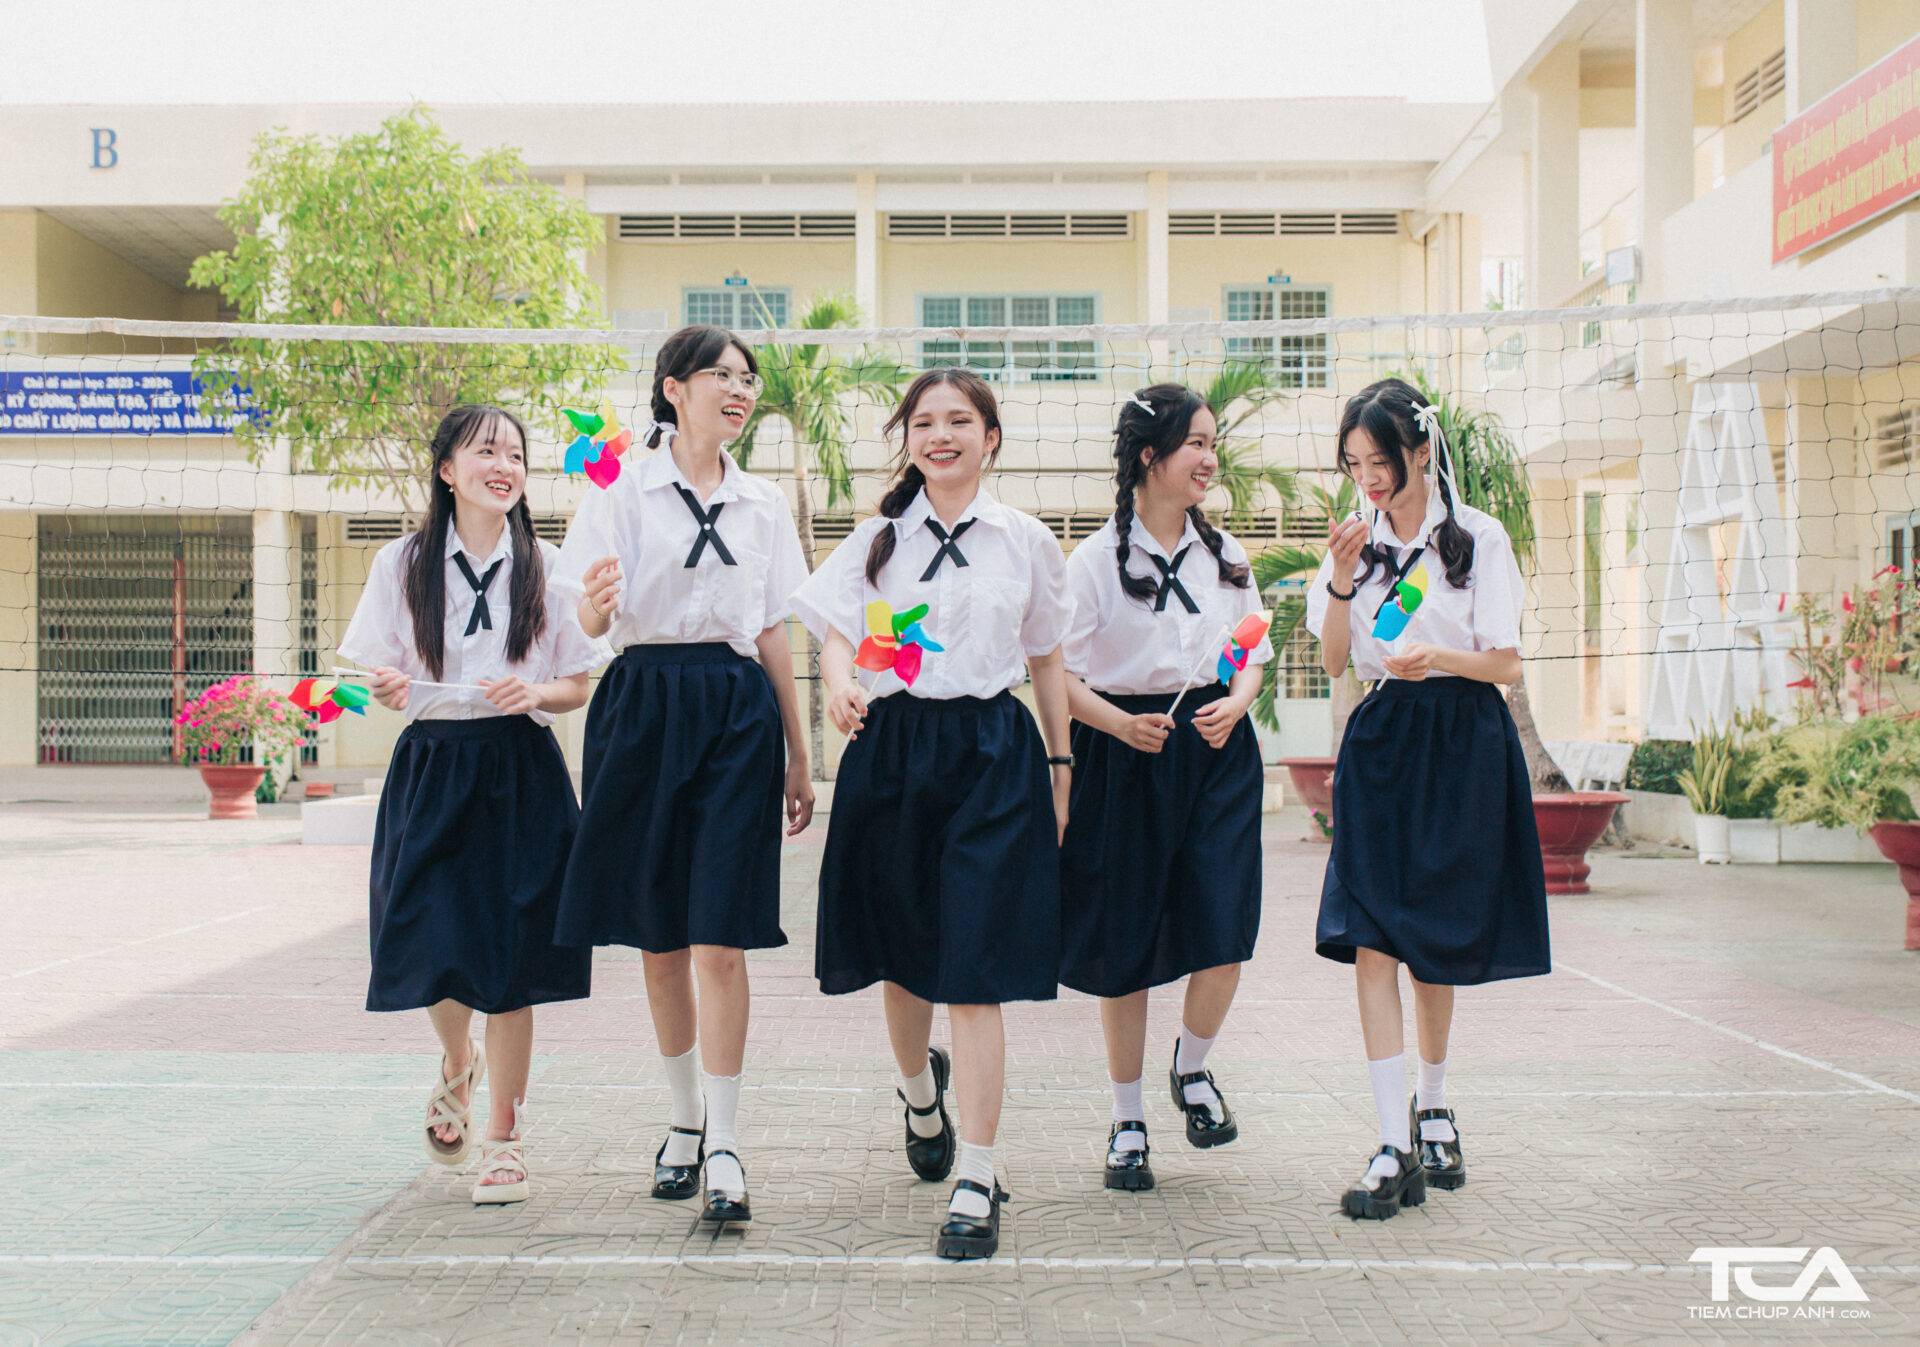 đồng phục của học sinh Thái Lan